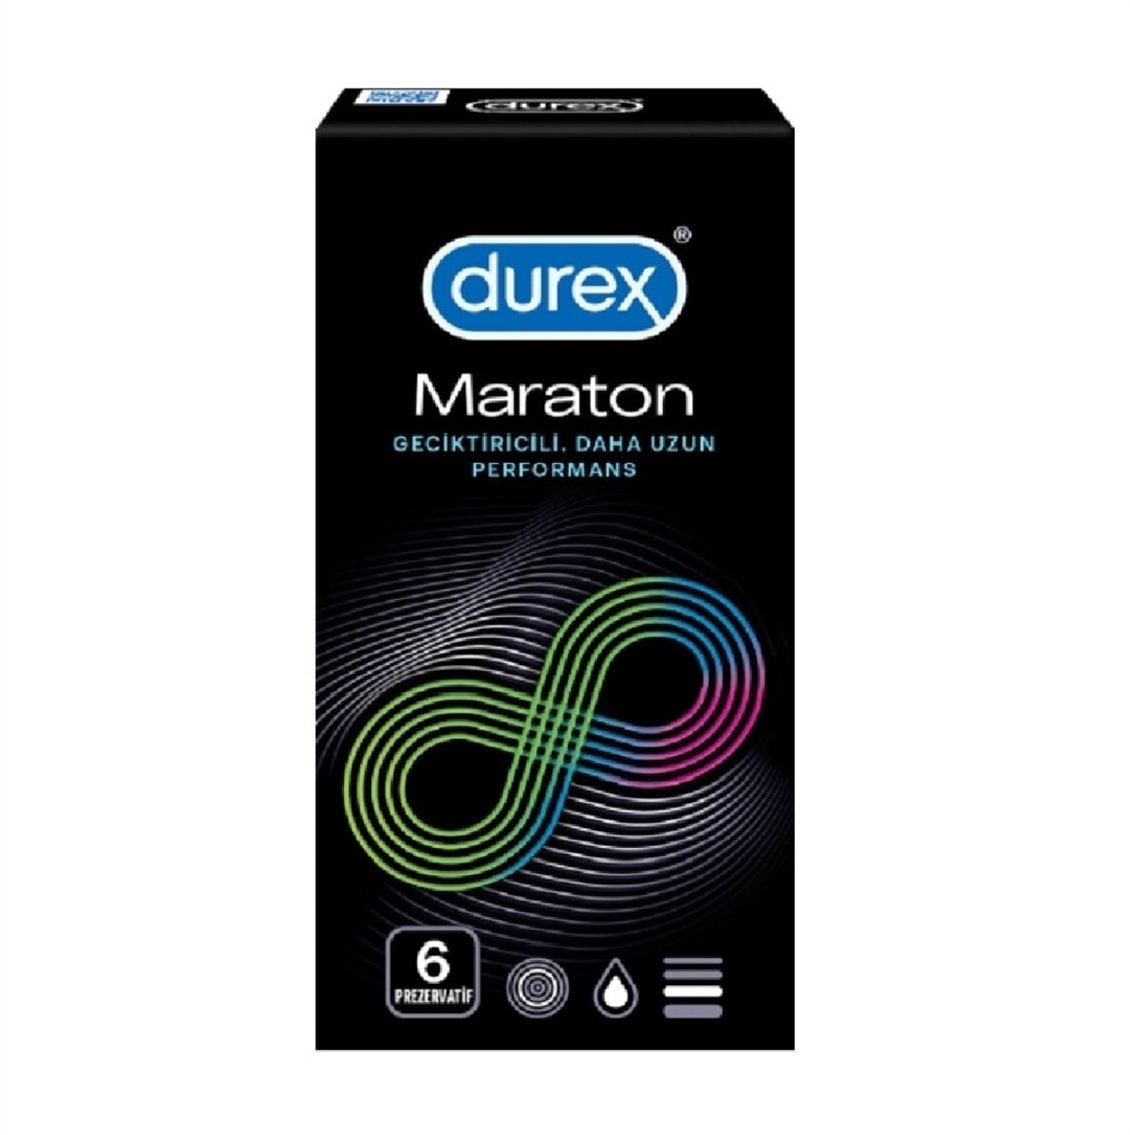 Durex Maraton 6'lı Geciktiricili Prezervatif - Onur Market